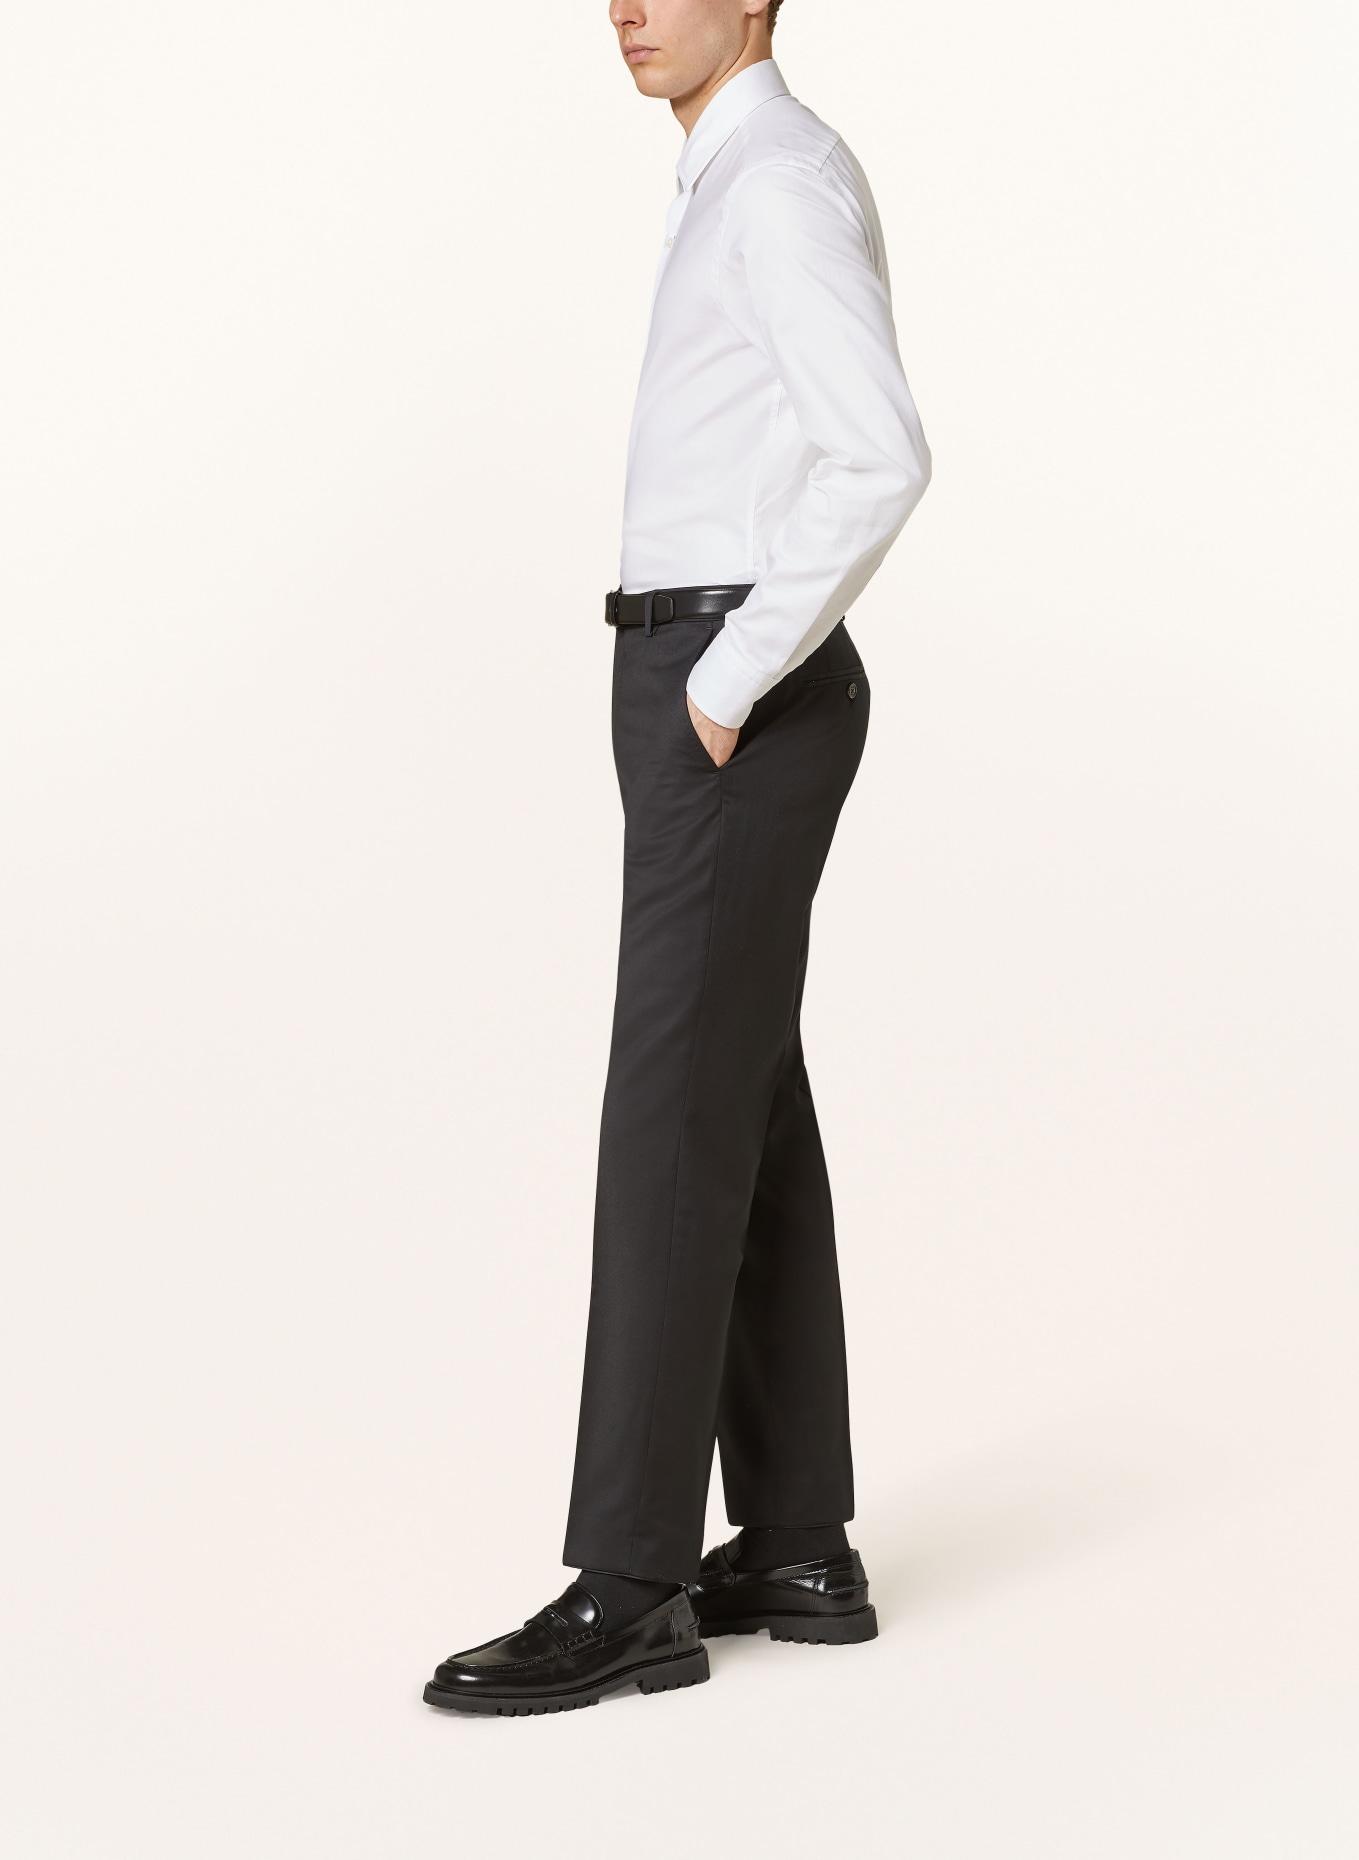 JOOP! Suit trousers slim fit, Color: 001 Black                      001 (Image 5)